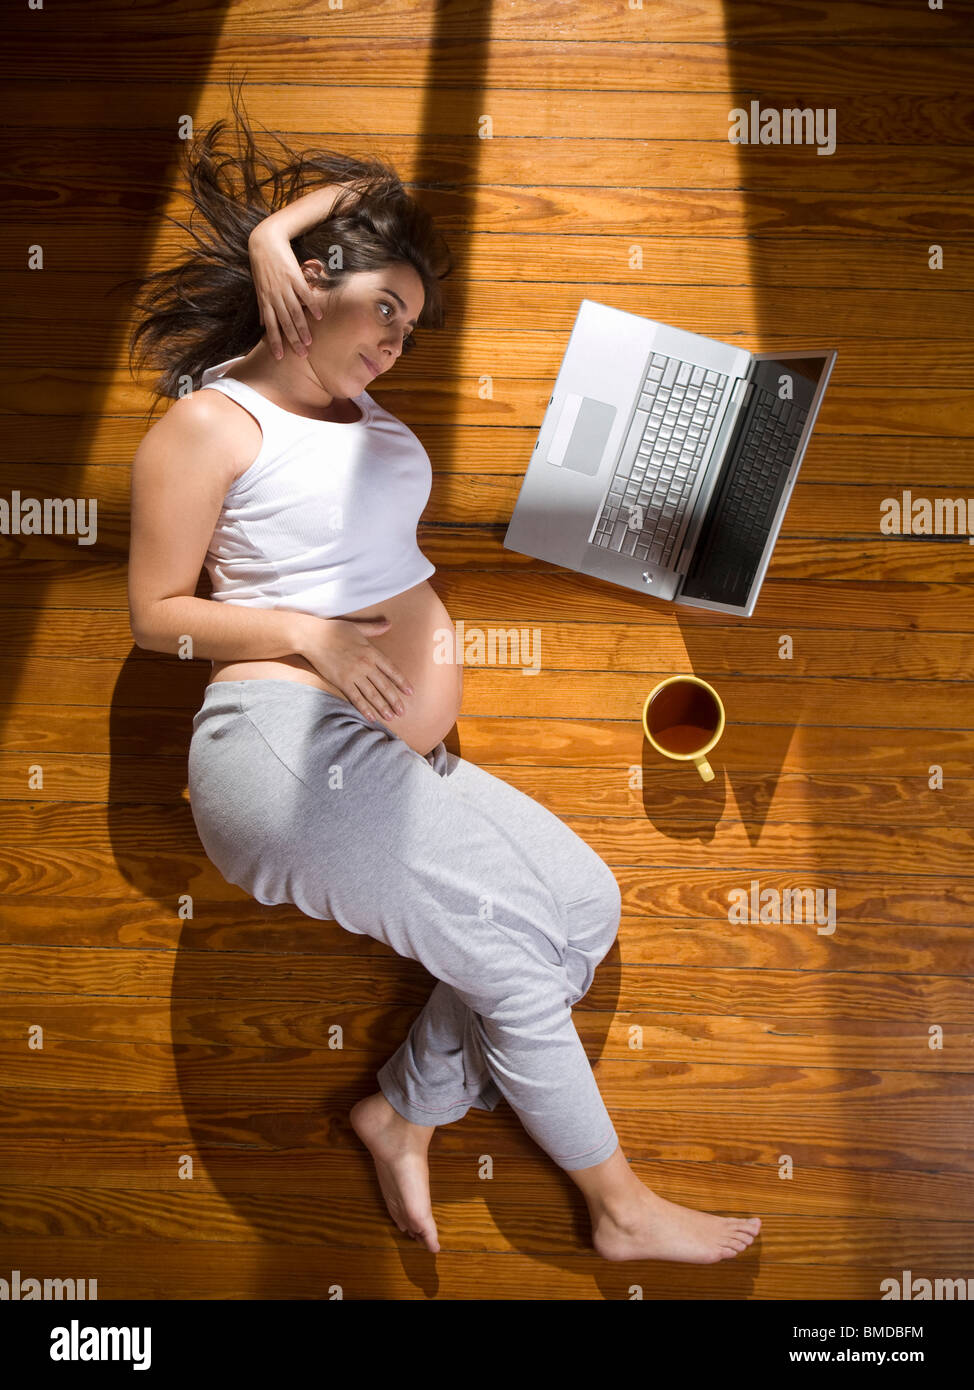 Vista superior de una joven embarazada, tumbado en el suelo con un ordenador portátil y una taza de té. Foto de stock